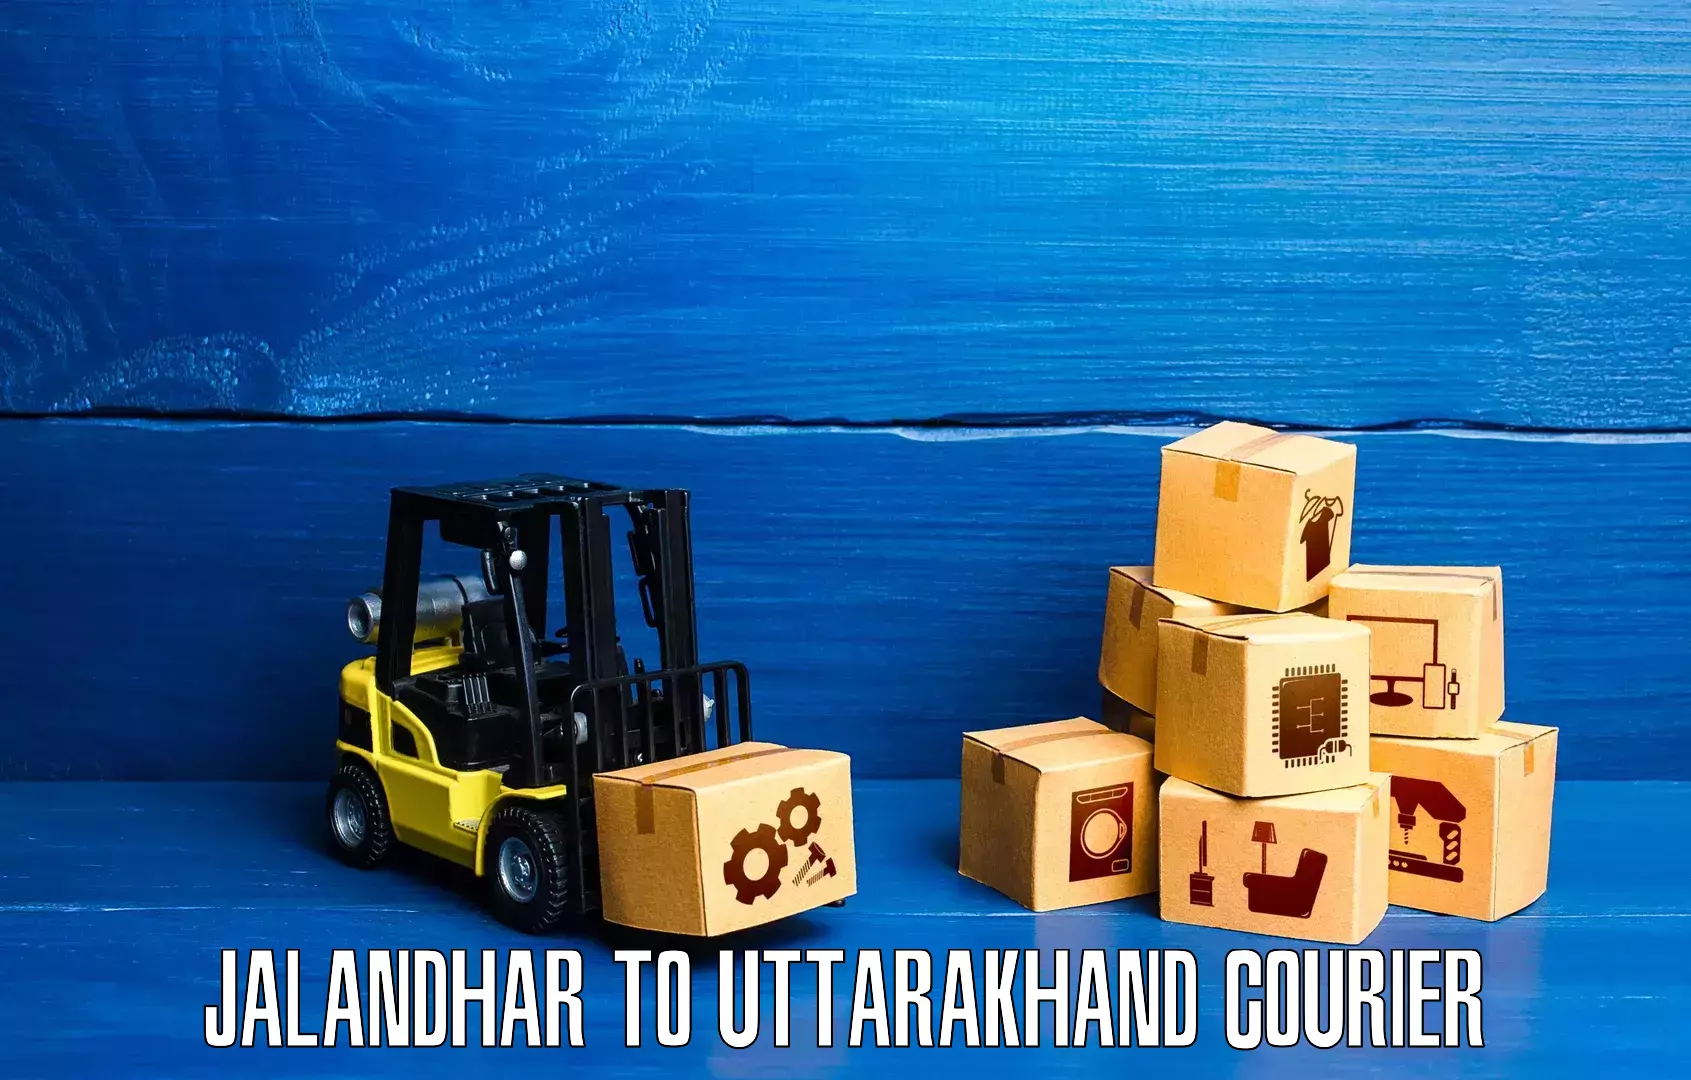 Nationwide parcel services Jalandhar to Dehradun